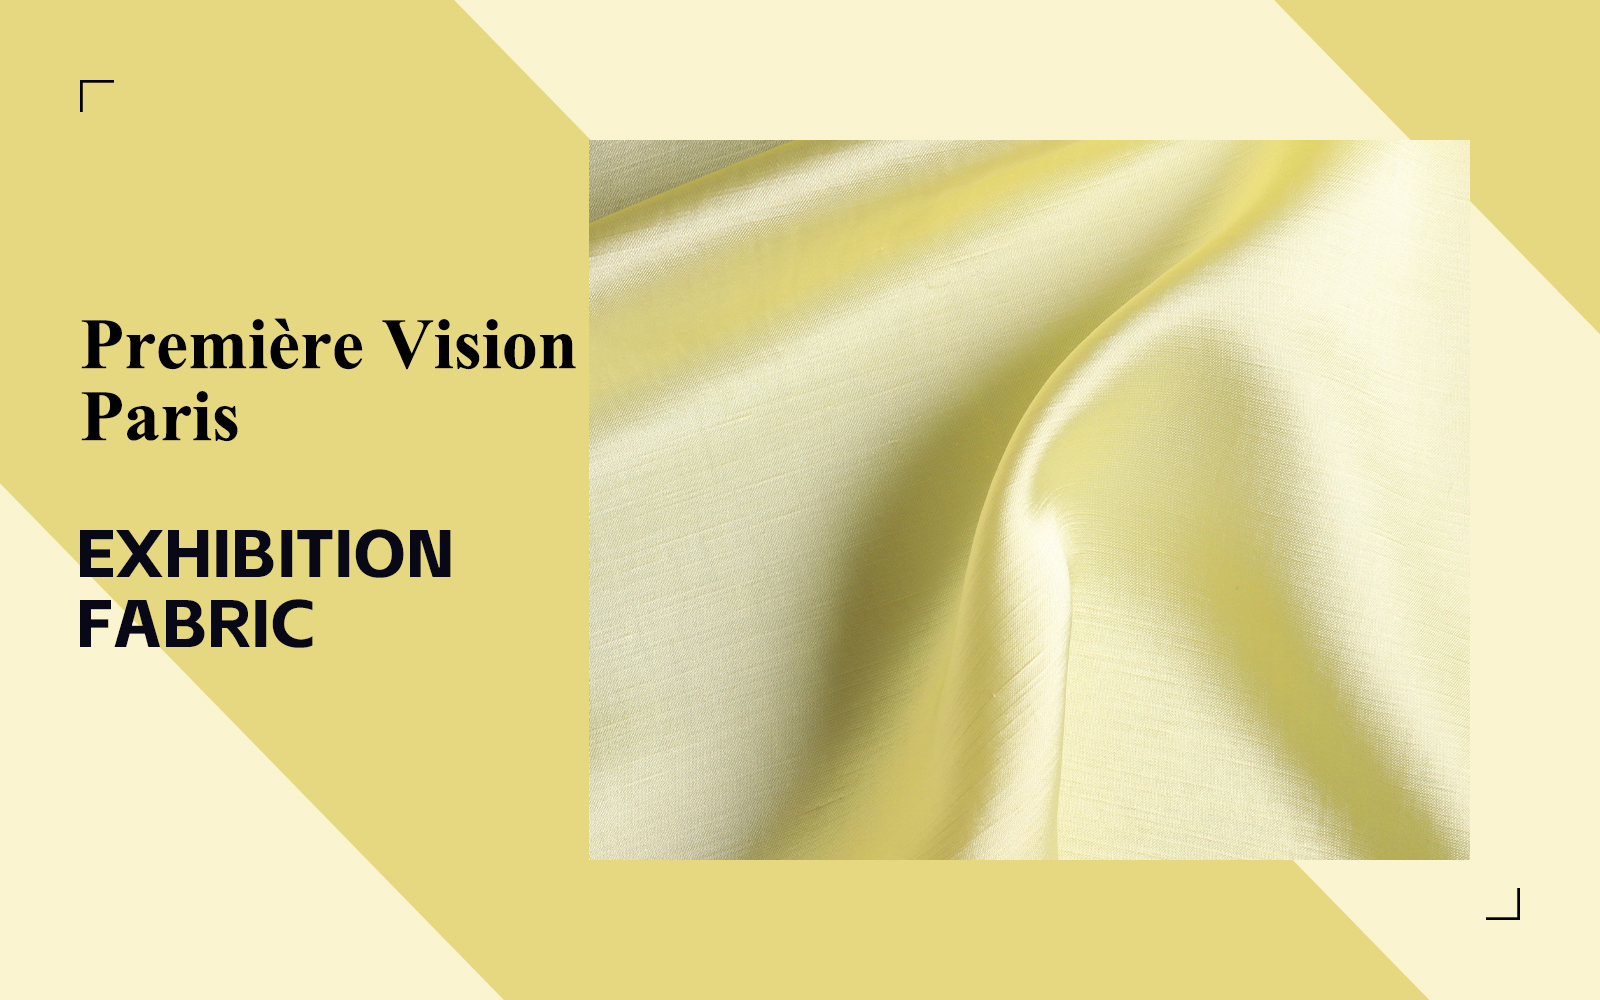 Silk -- The Fabric Analysis of Première Vision Paris